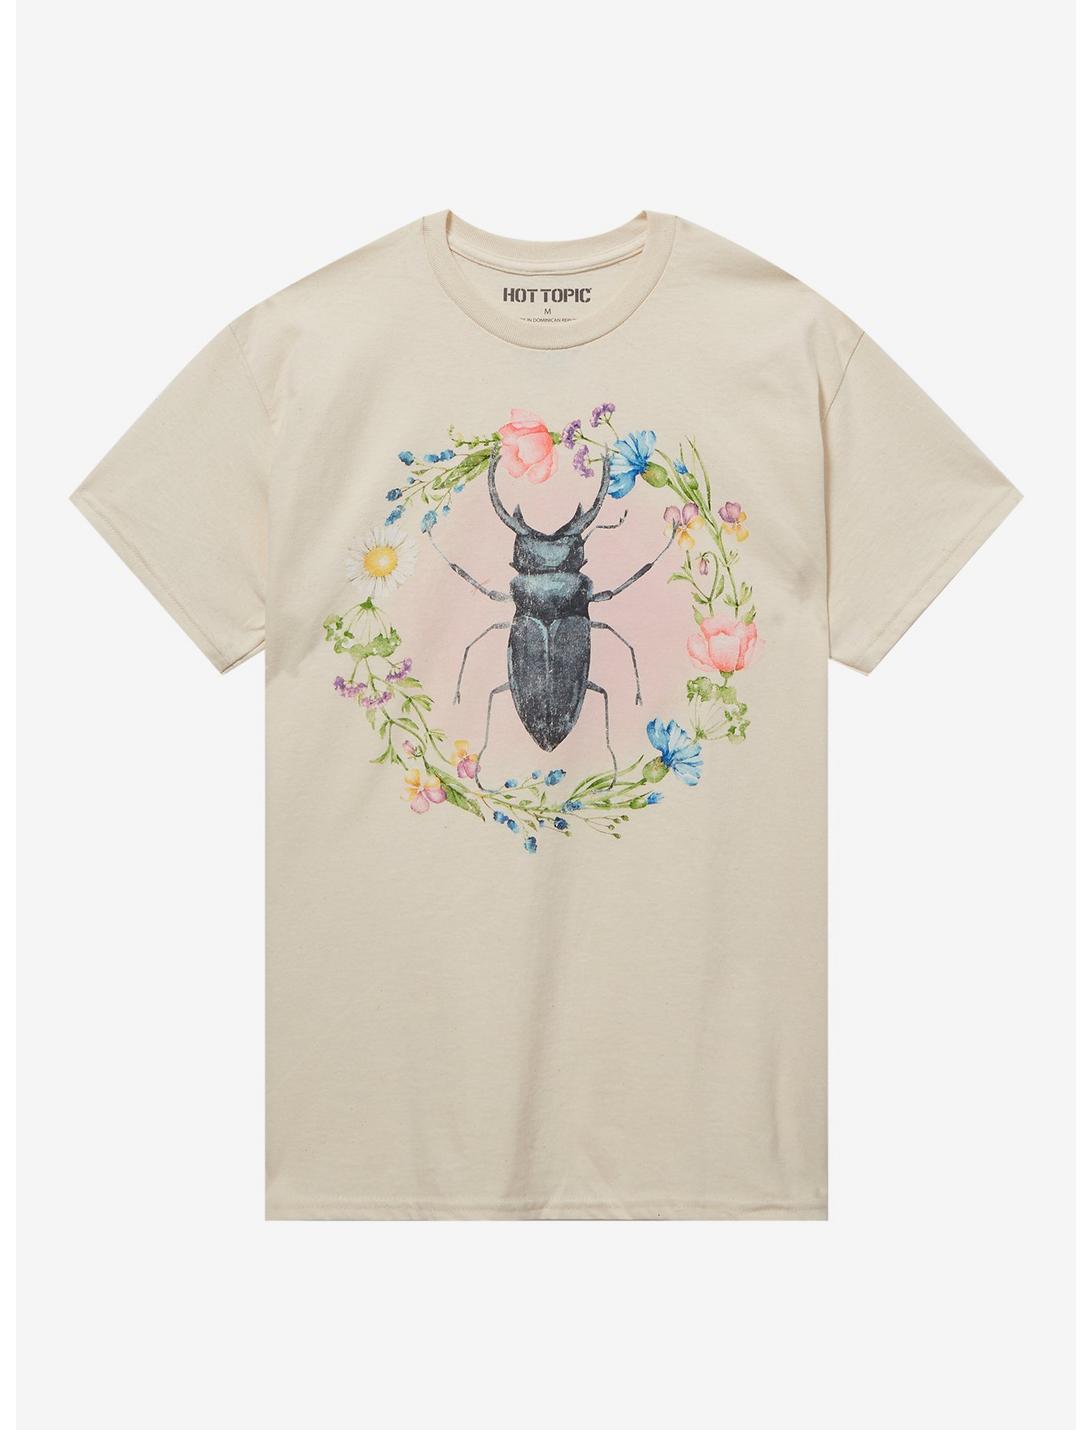 Beetle Floral Boyfriend Fit Girls T-Shirt, MULTI, hi-res